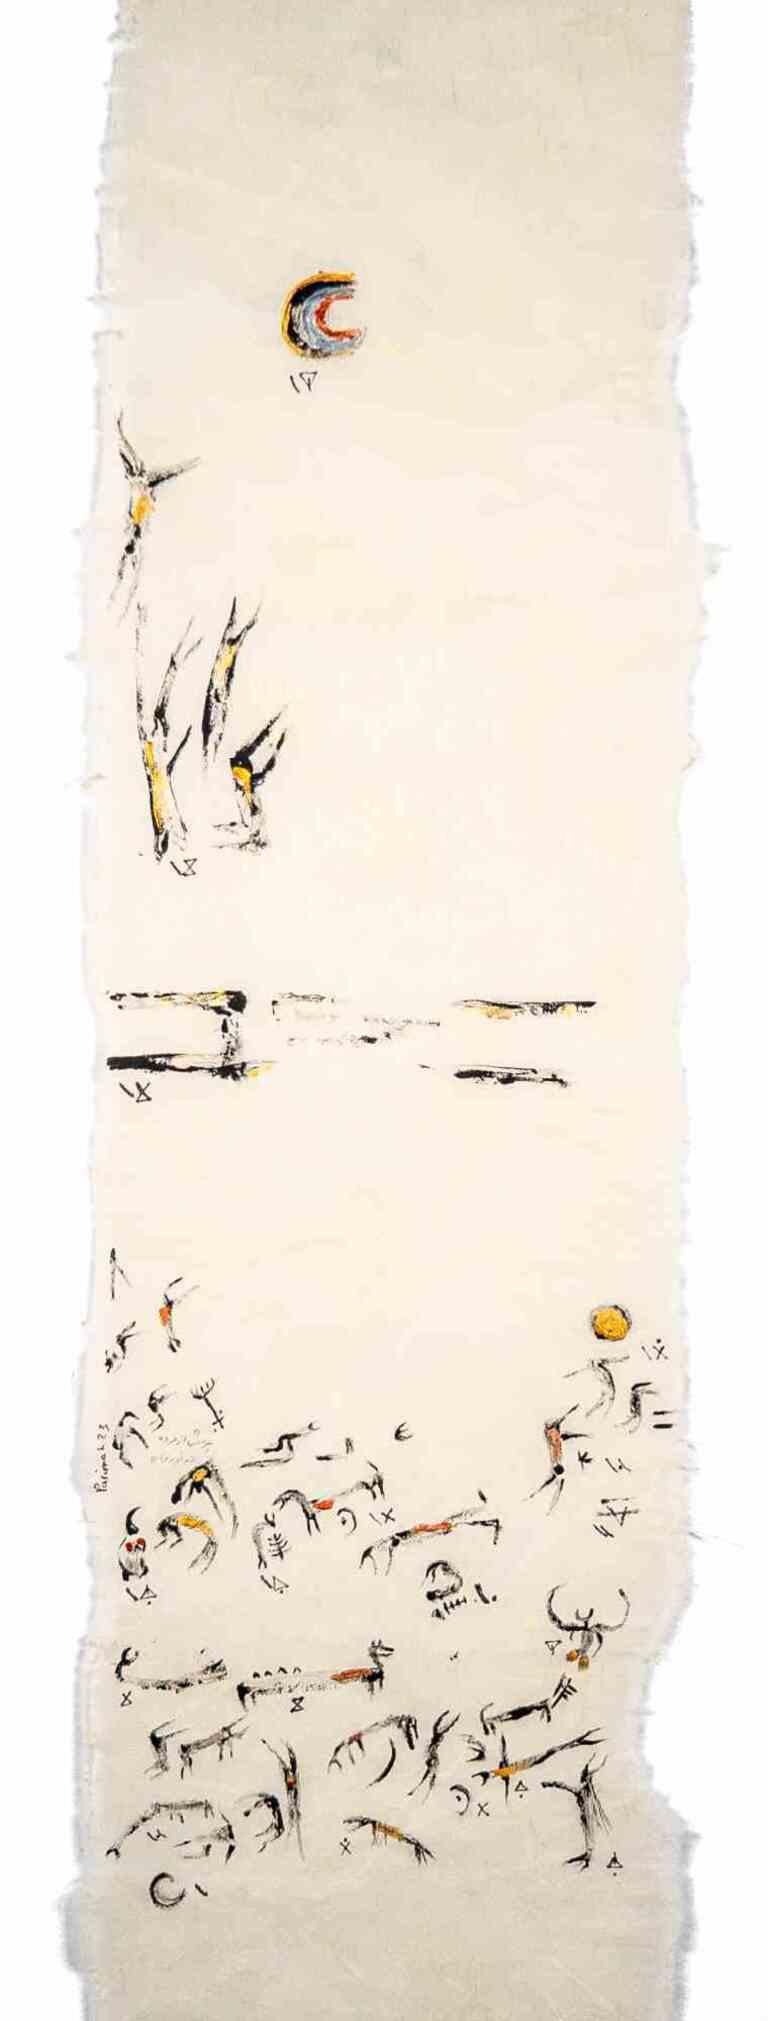 Questioning the Dead Under Moonlight ist eine Zeichnung der iranischen Künstlerin und Dichterin Parimah Avani aus dem Jahr 2023.

China-Tusche, Acryl auf japanischem Washi Haruki-Papier mit aufgetragenem Papyrus, Plettenberg, DE.

Ausgestellt in "